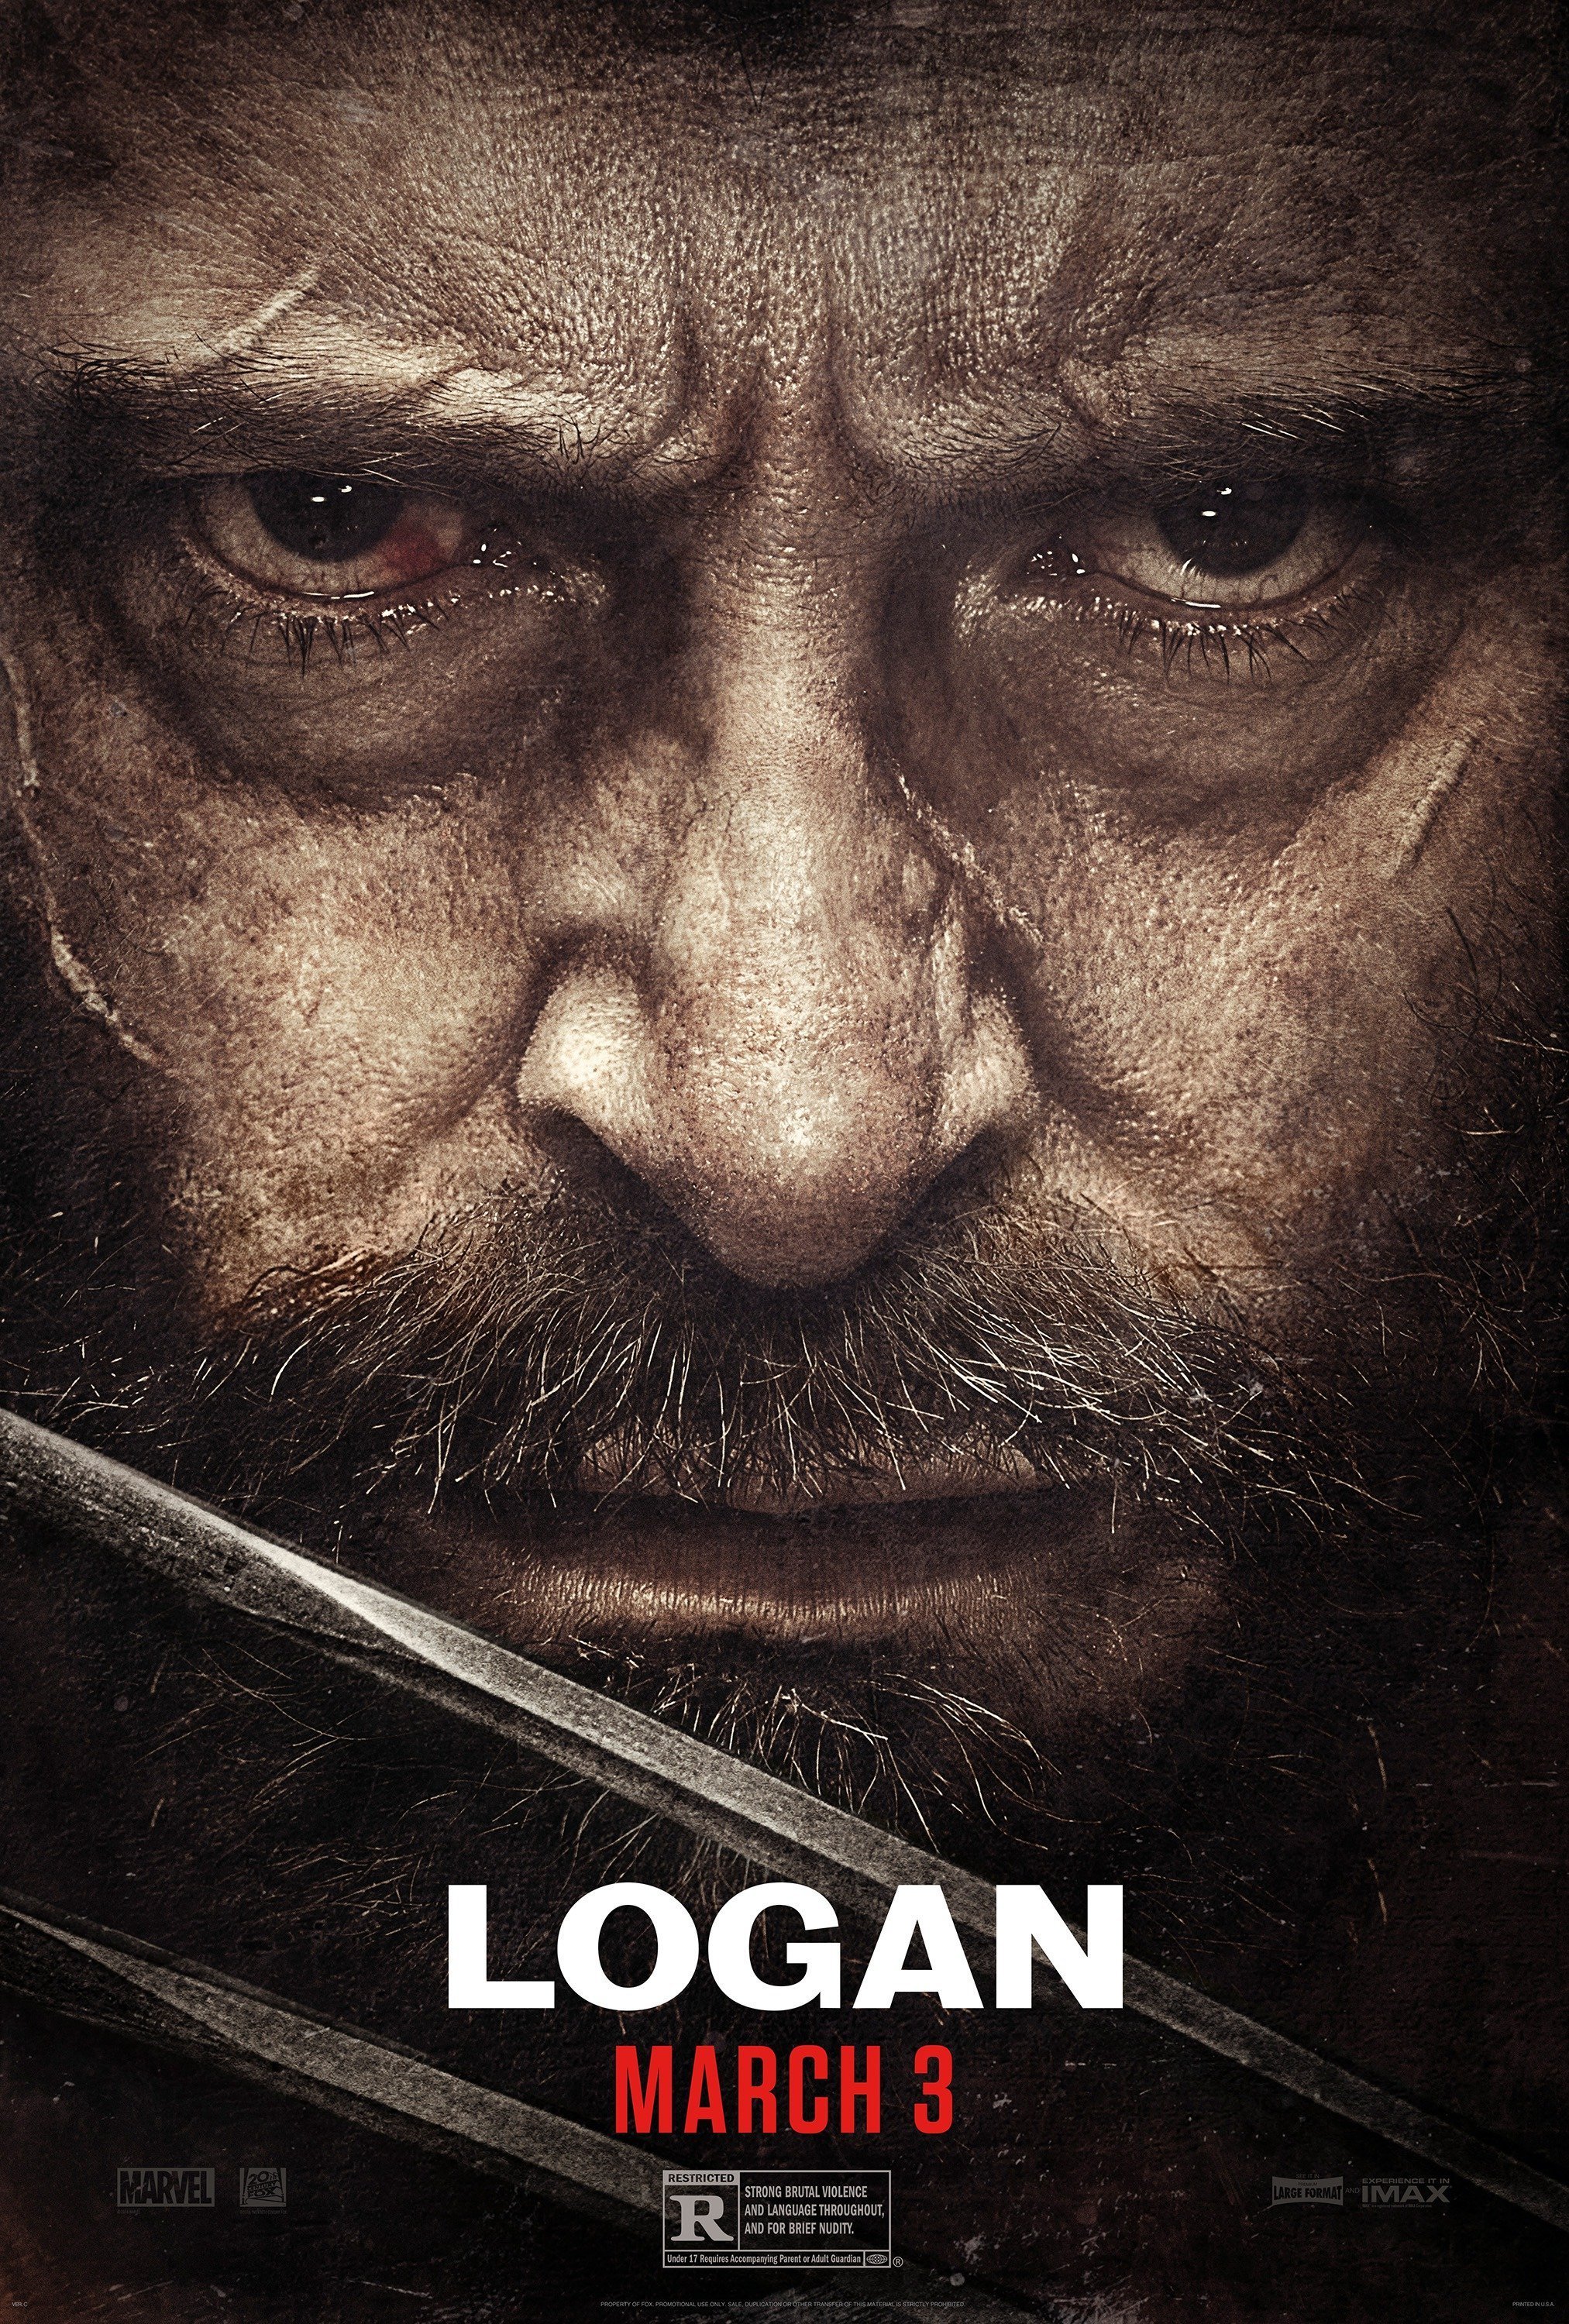 Poster du film Logan avec un gros plan sur le visage d'Hugh Jackman